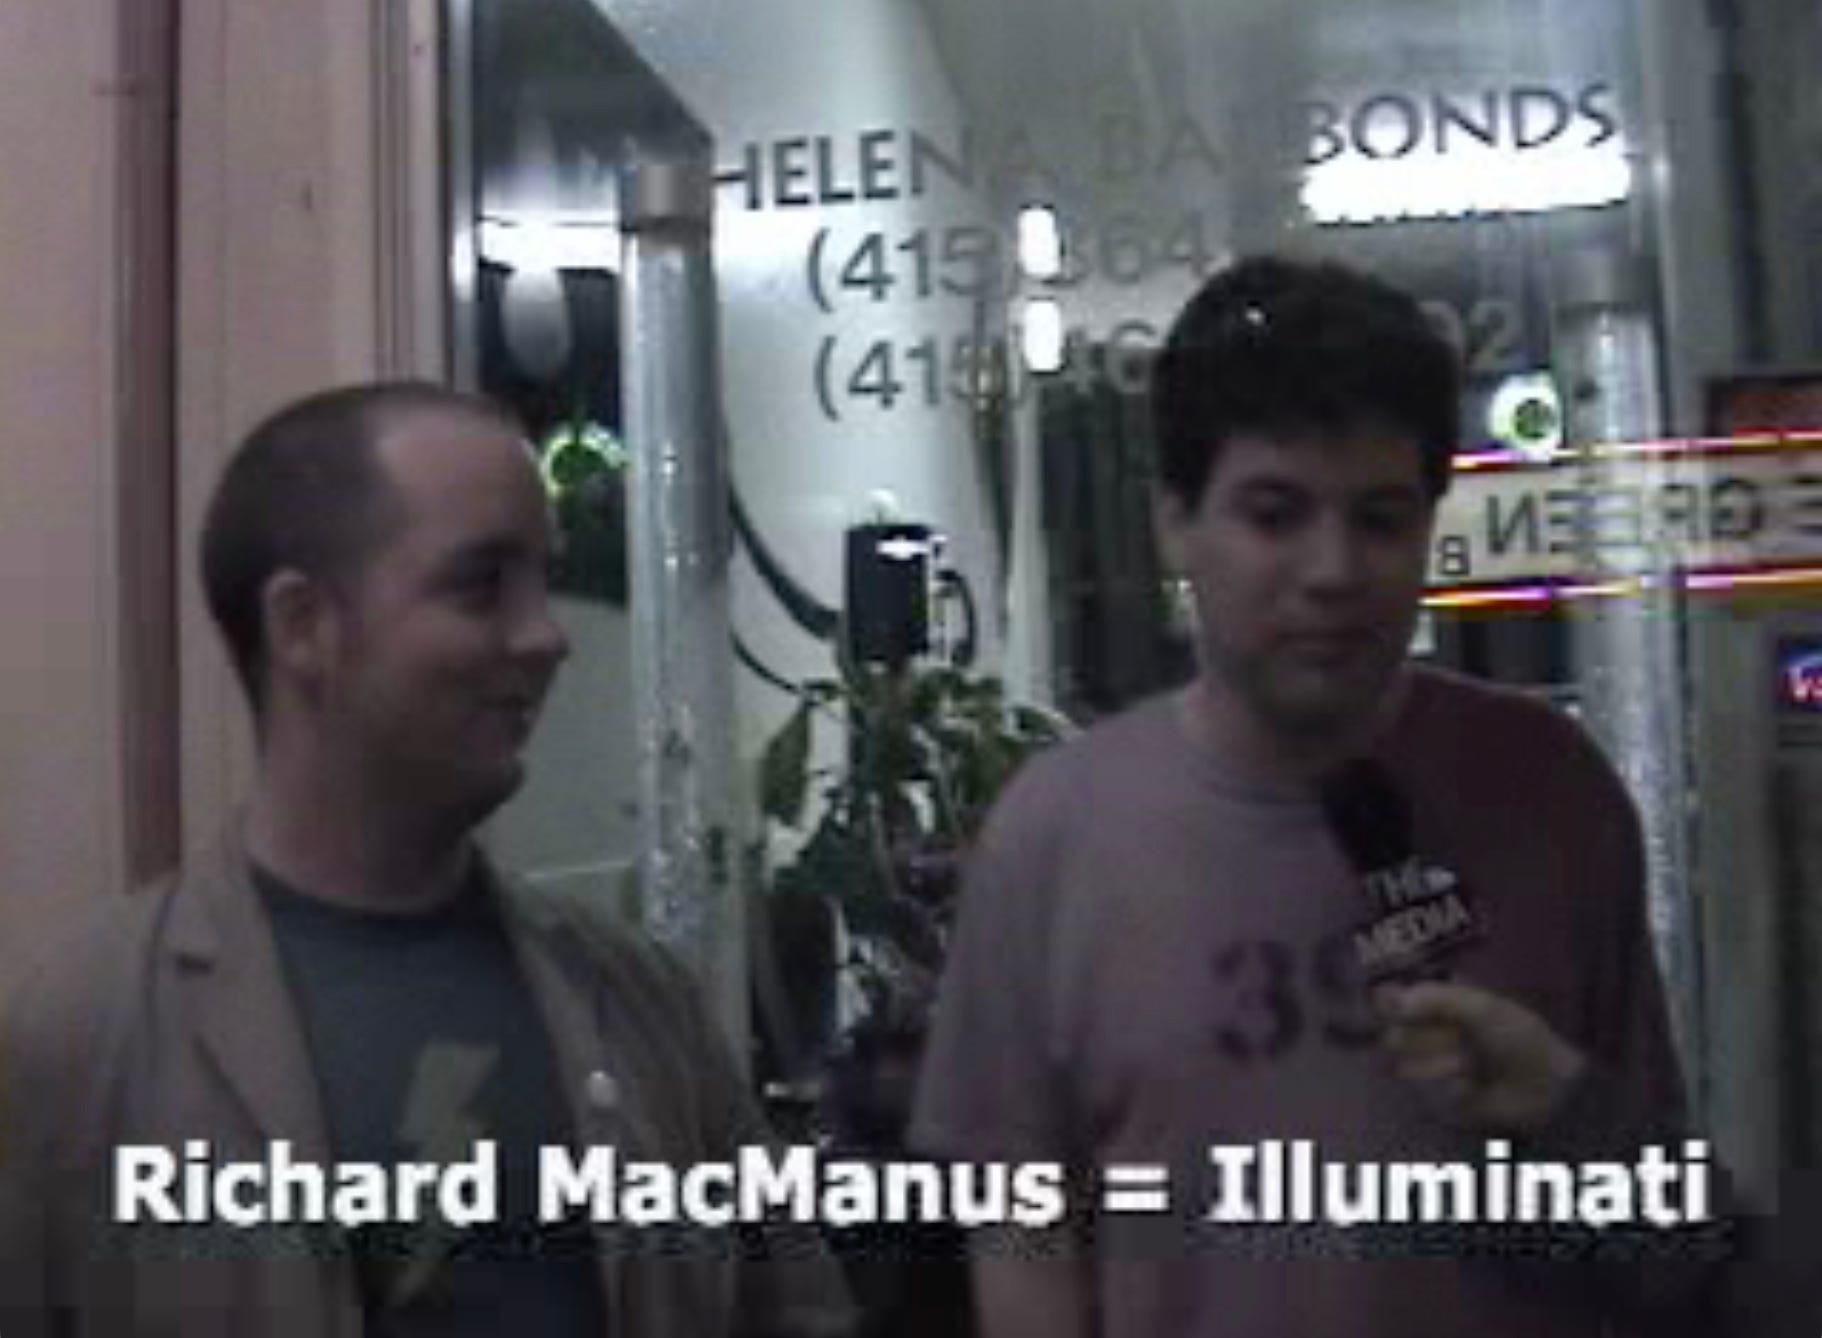 Richard MacManus = Illuminati (according to Supr.c.ilio.us in 2005)